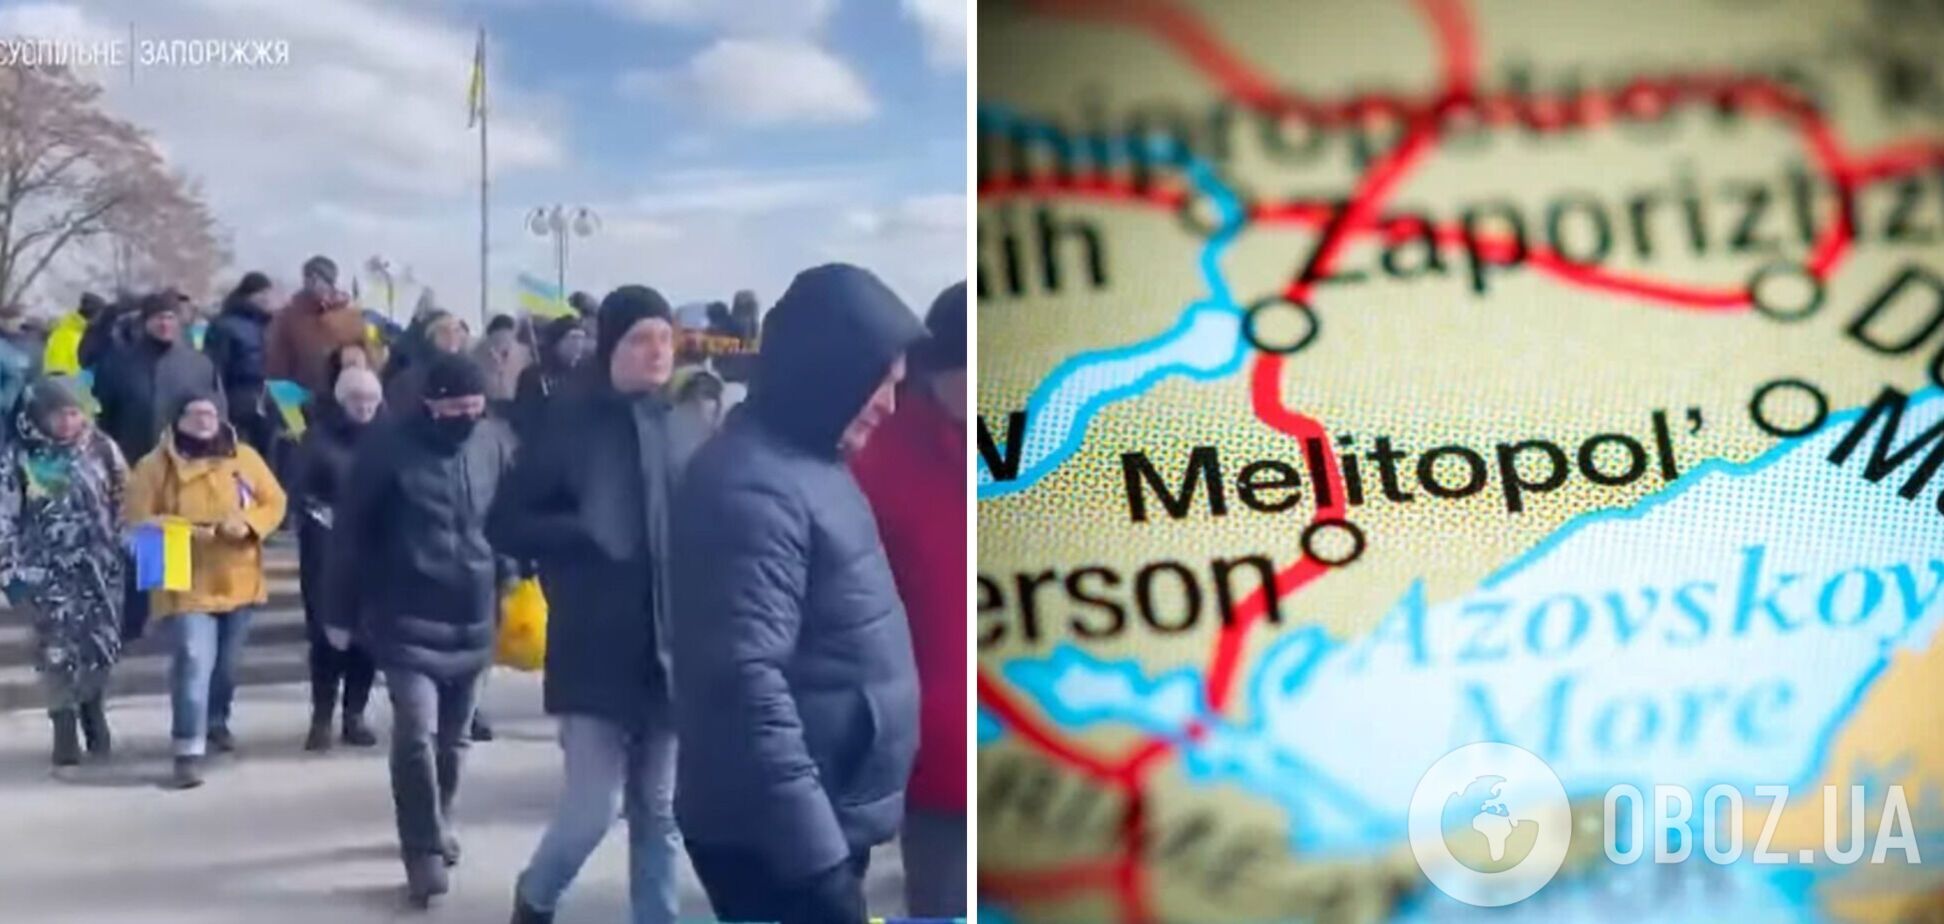 'Мелитополь – это Украина': люди с украинскими флагами вышли на акцию против оккупантов. Видео